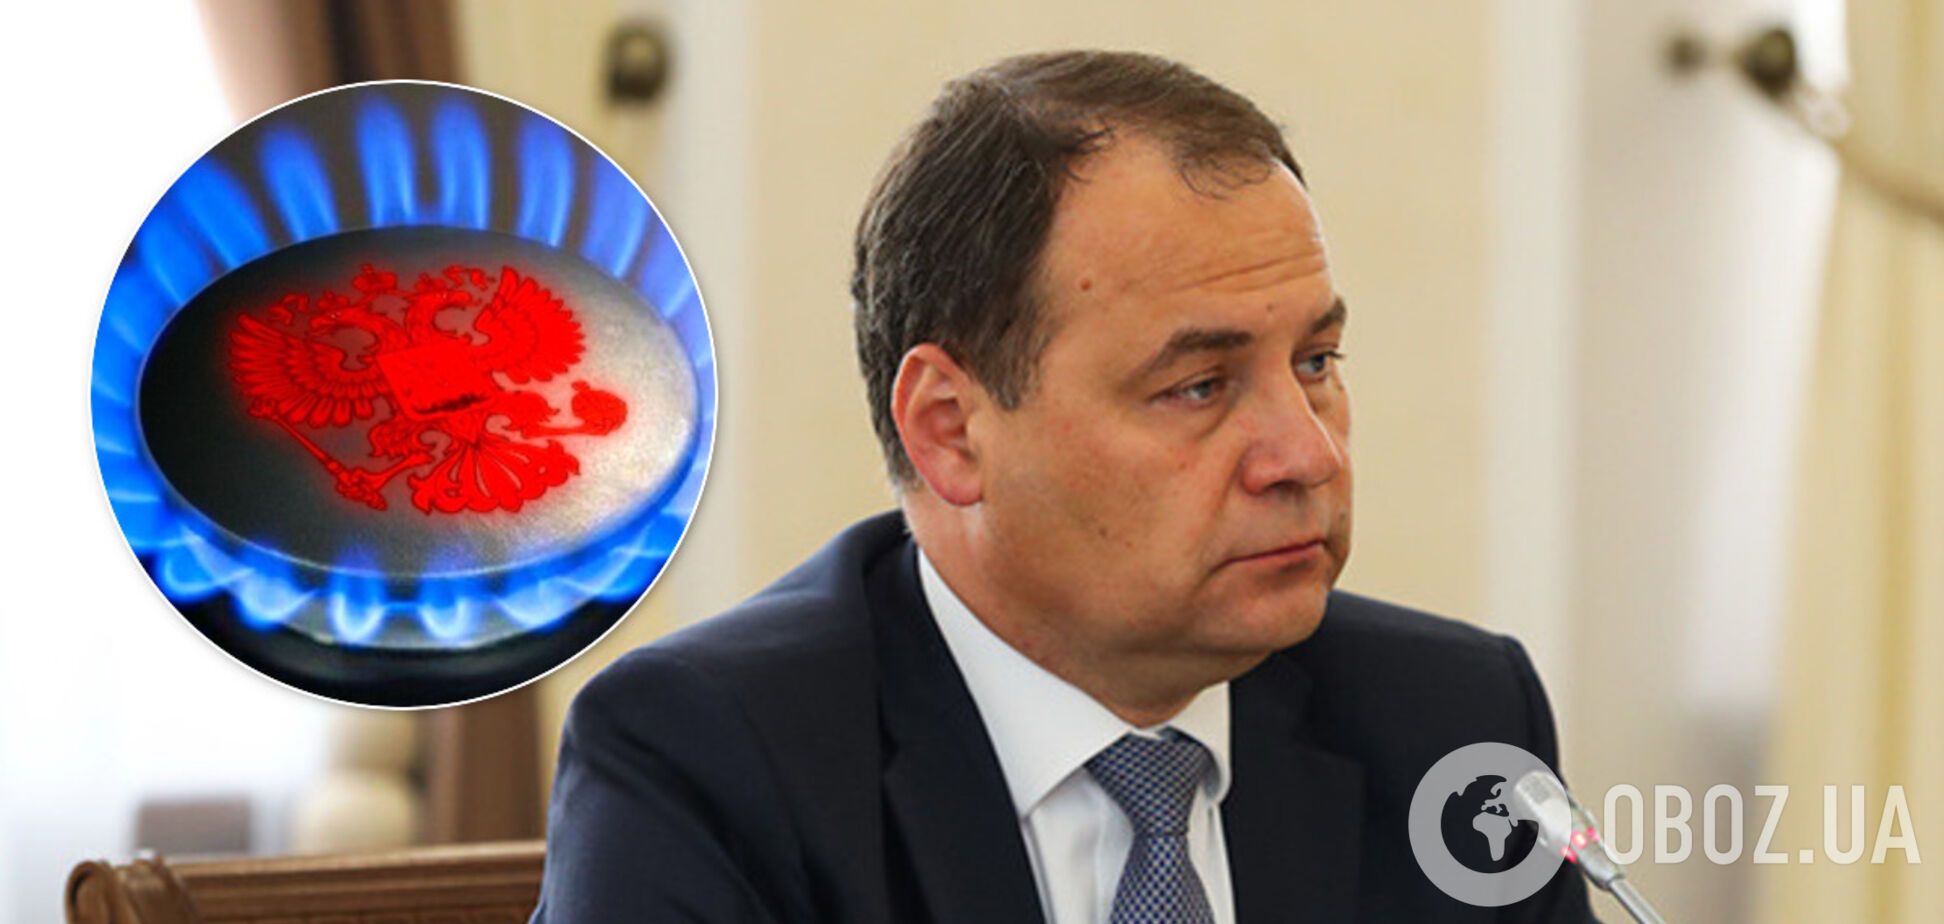 Новый премьер Беларуси задумал снизить зависимость от нефти и газа